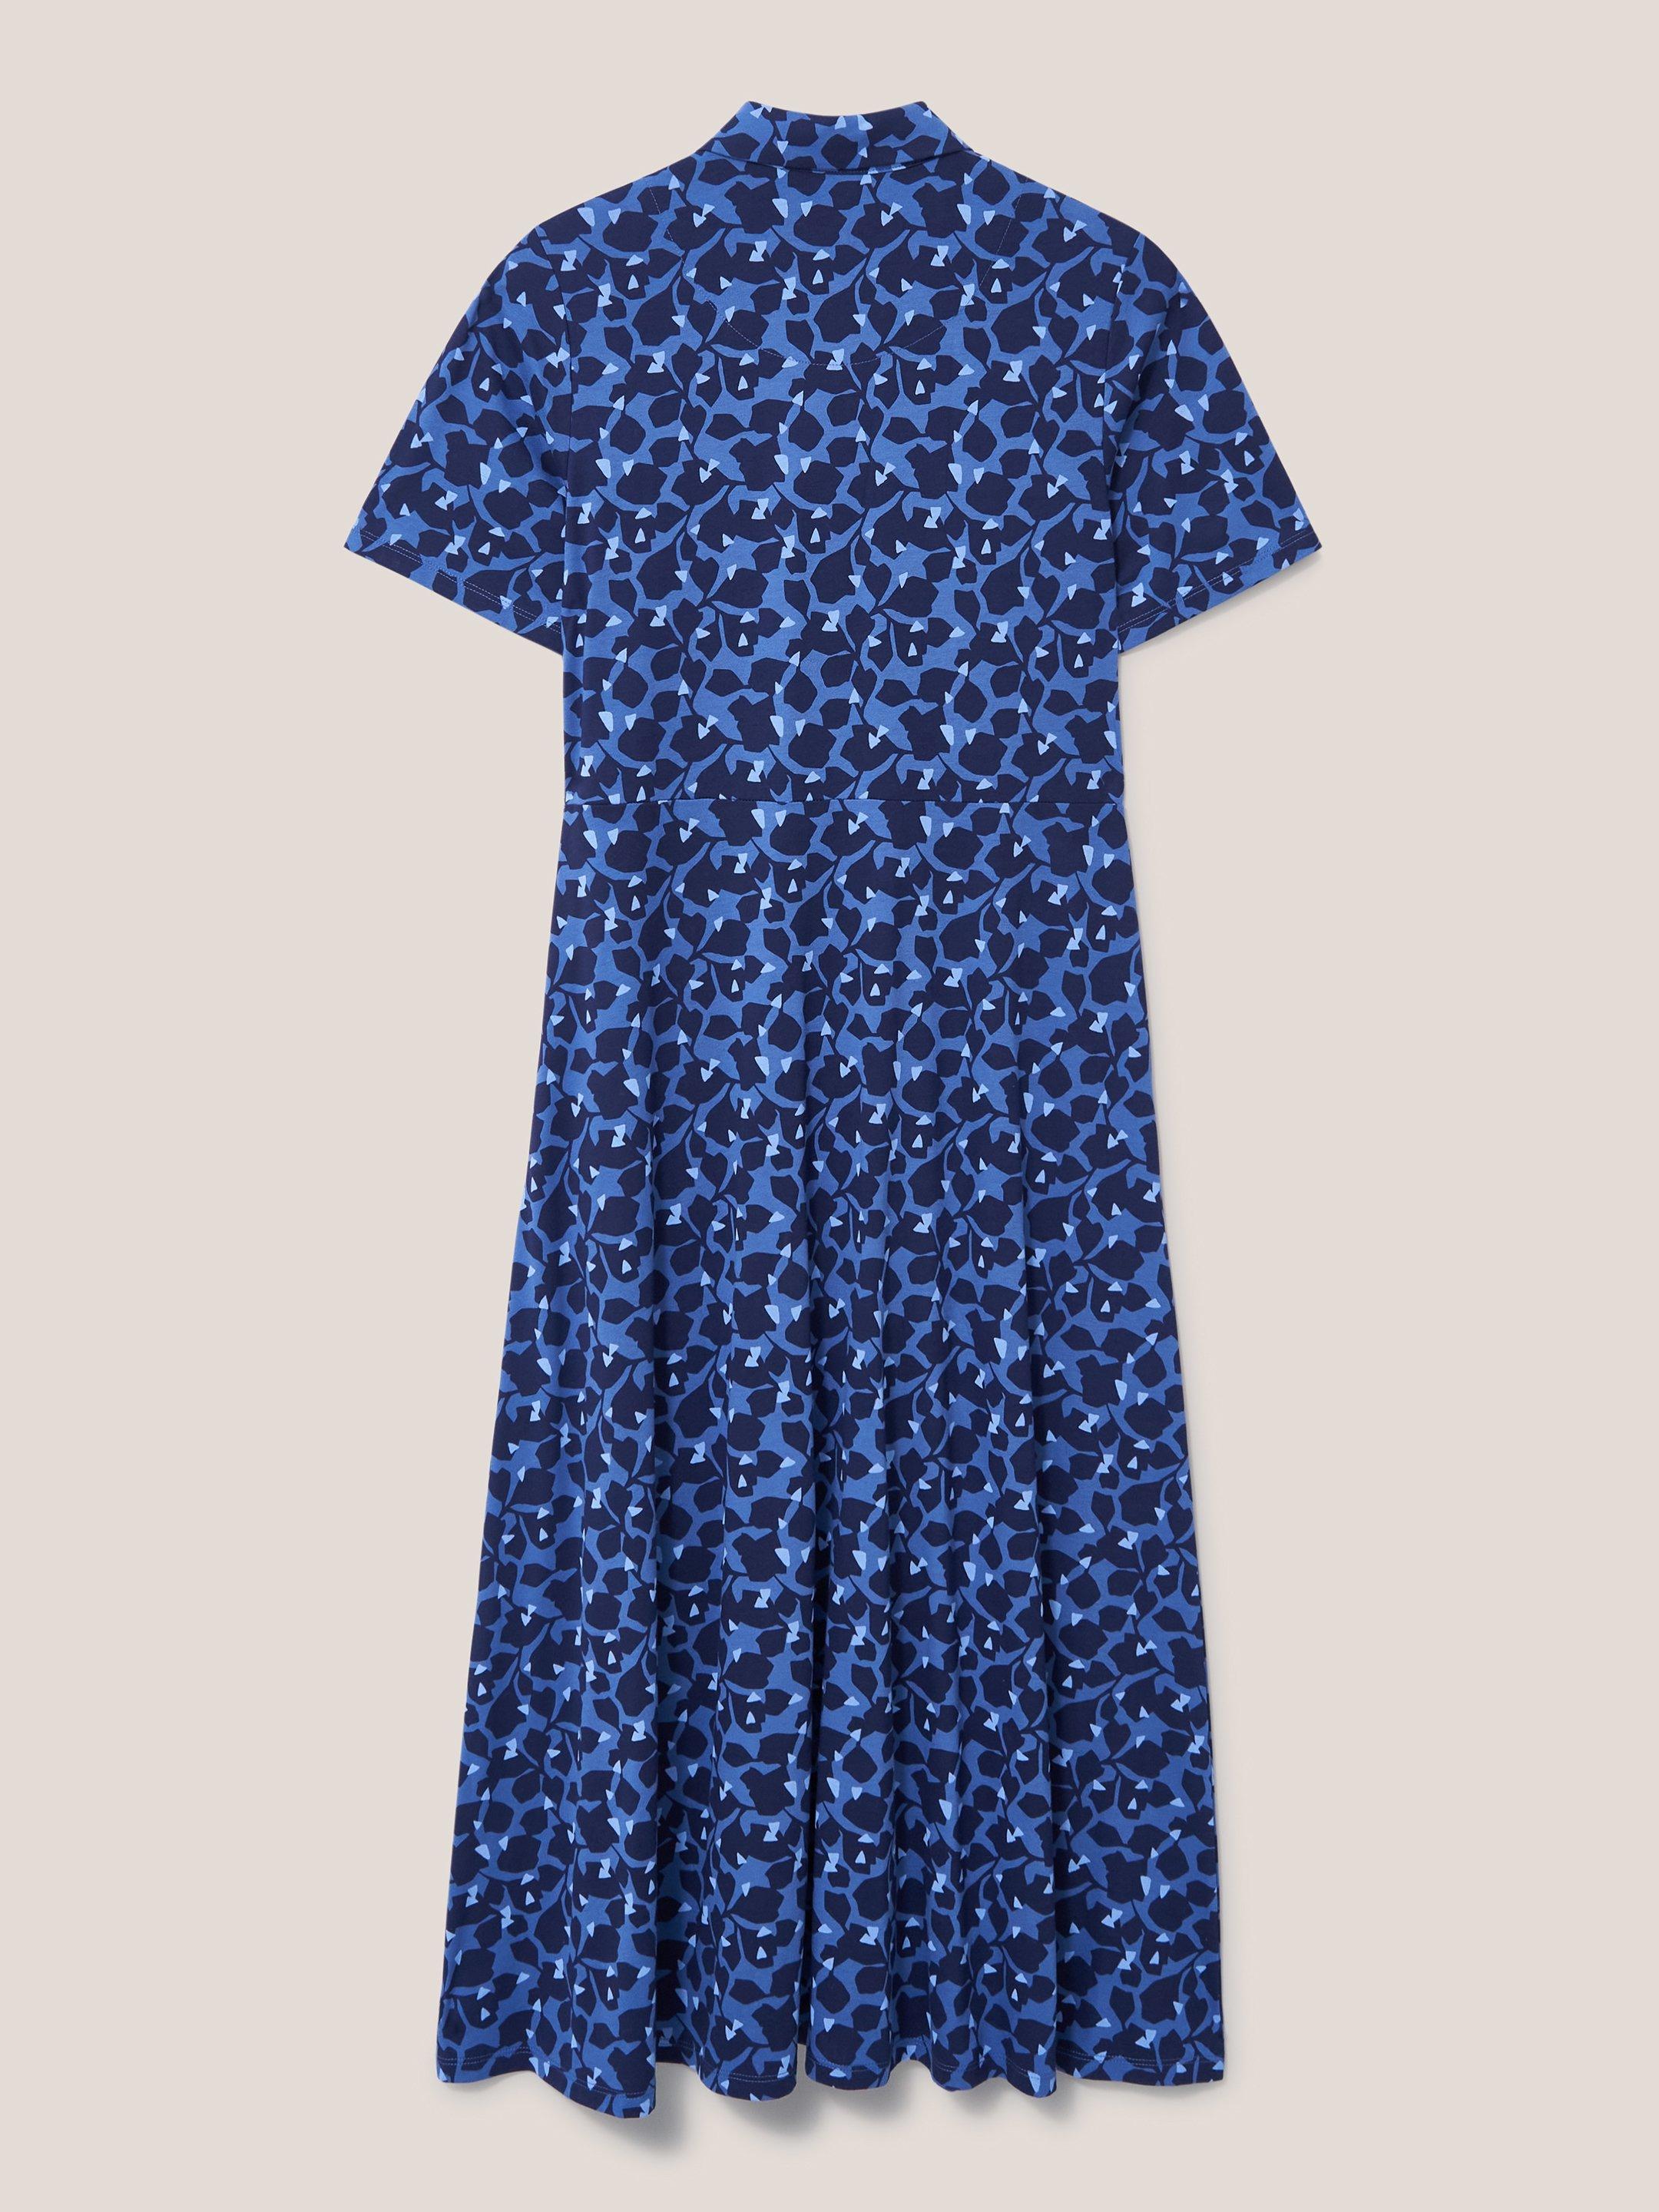 Rua Jersey Short Sleeve Shirt Dress in BLUE MLT - FLAT BACK